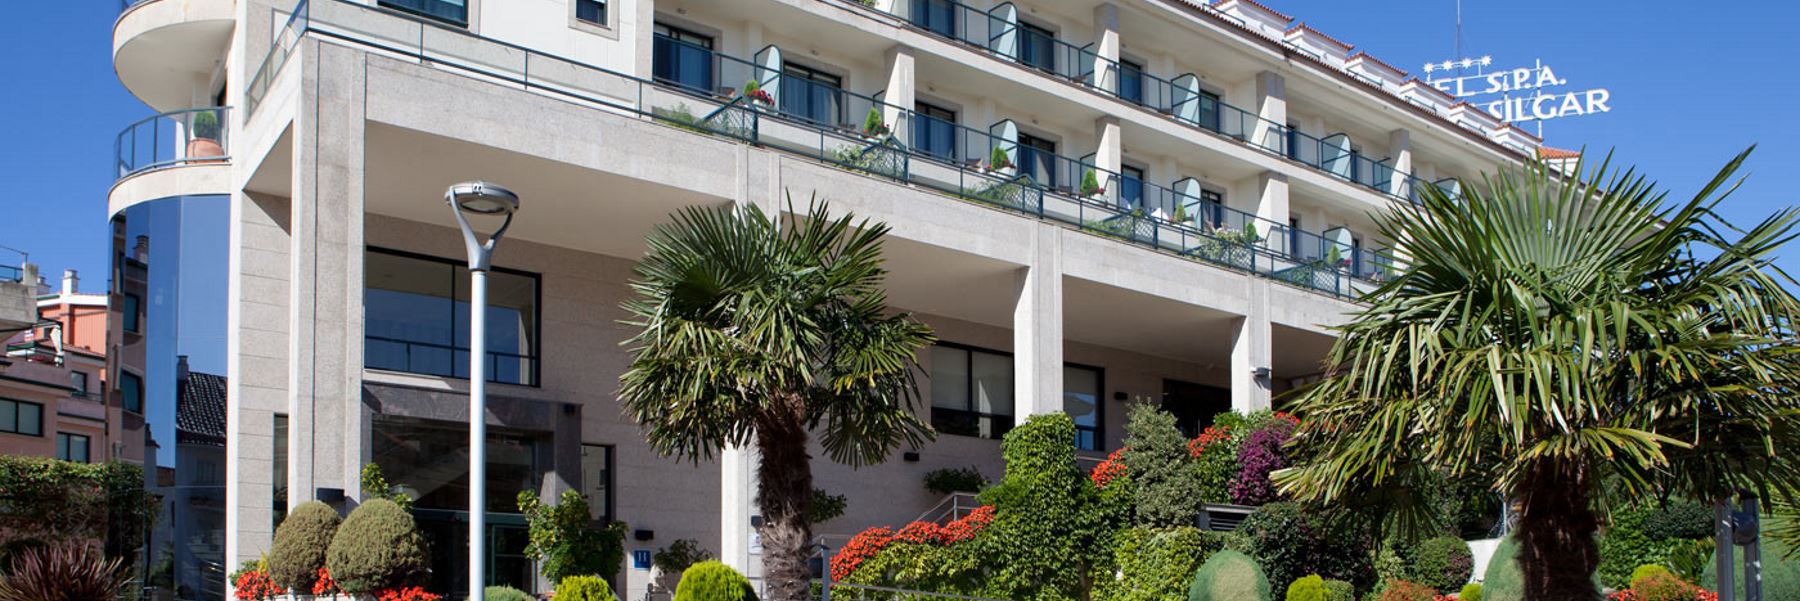 Oferta Hotel con Spa en Galicia (Sanxenxo - PONTEVEDRA)